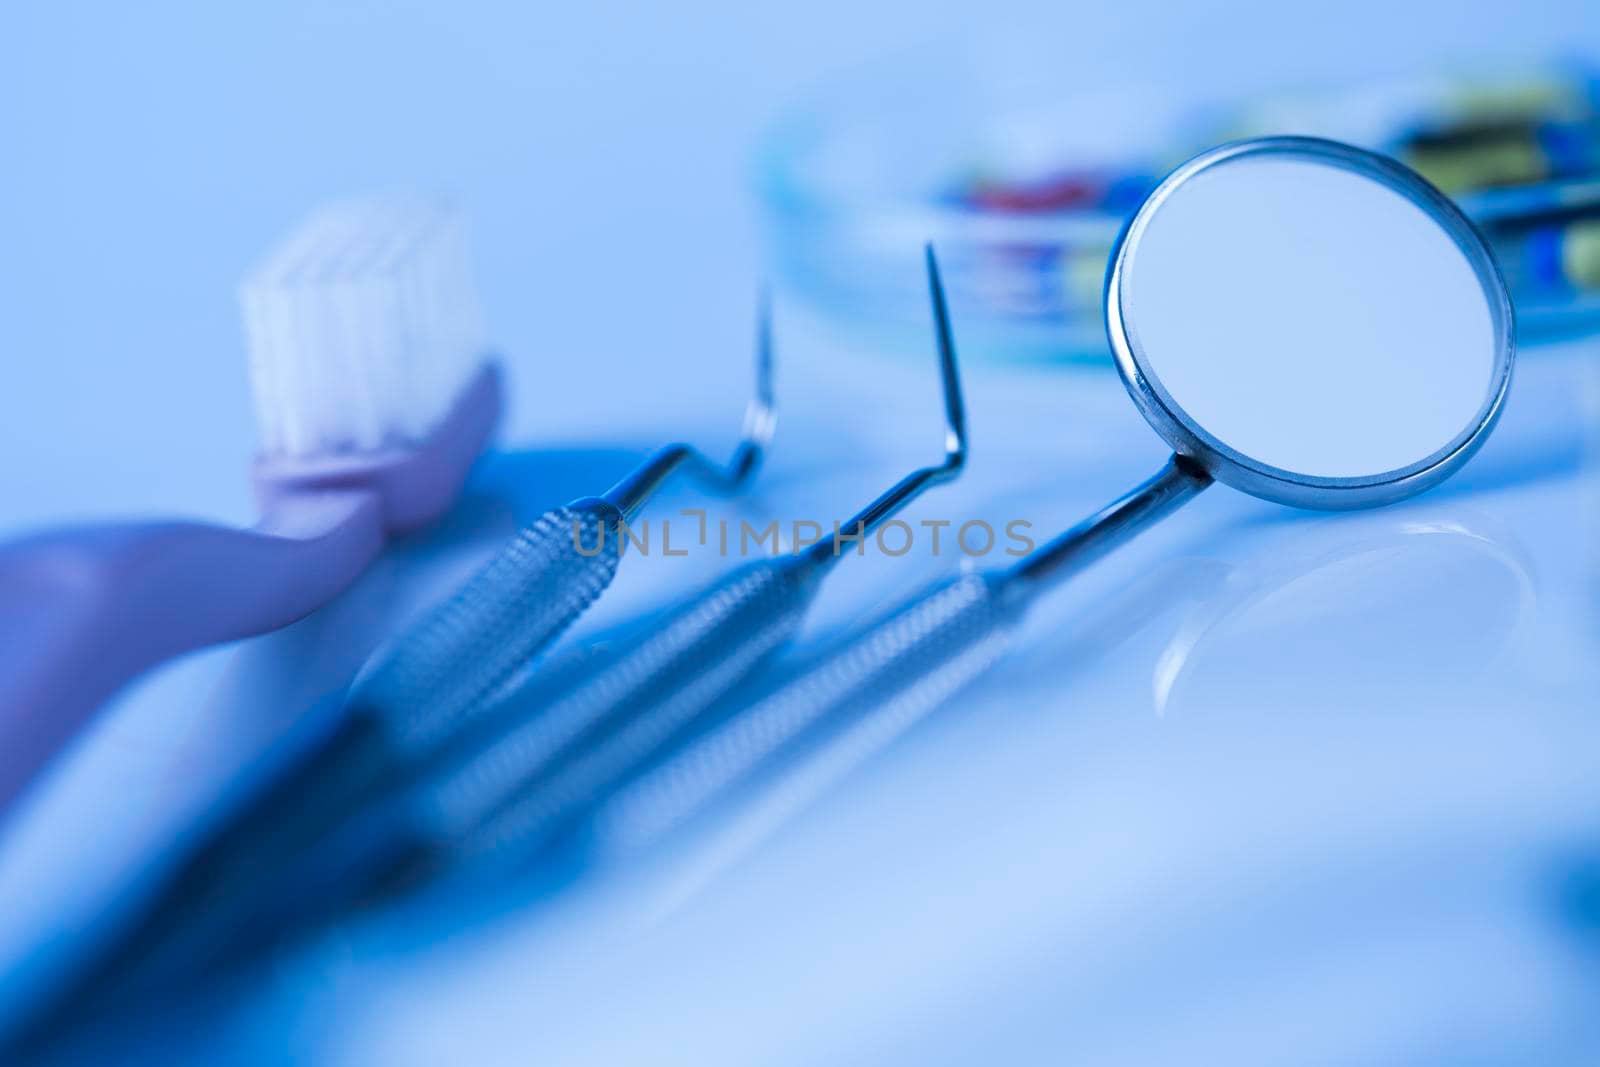 Stomatology equipment for dental care